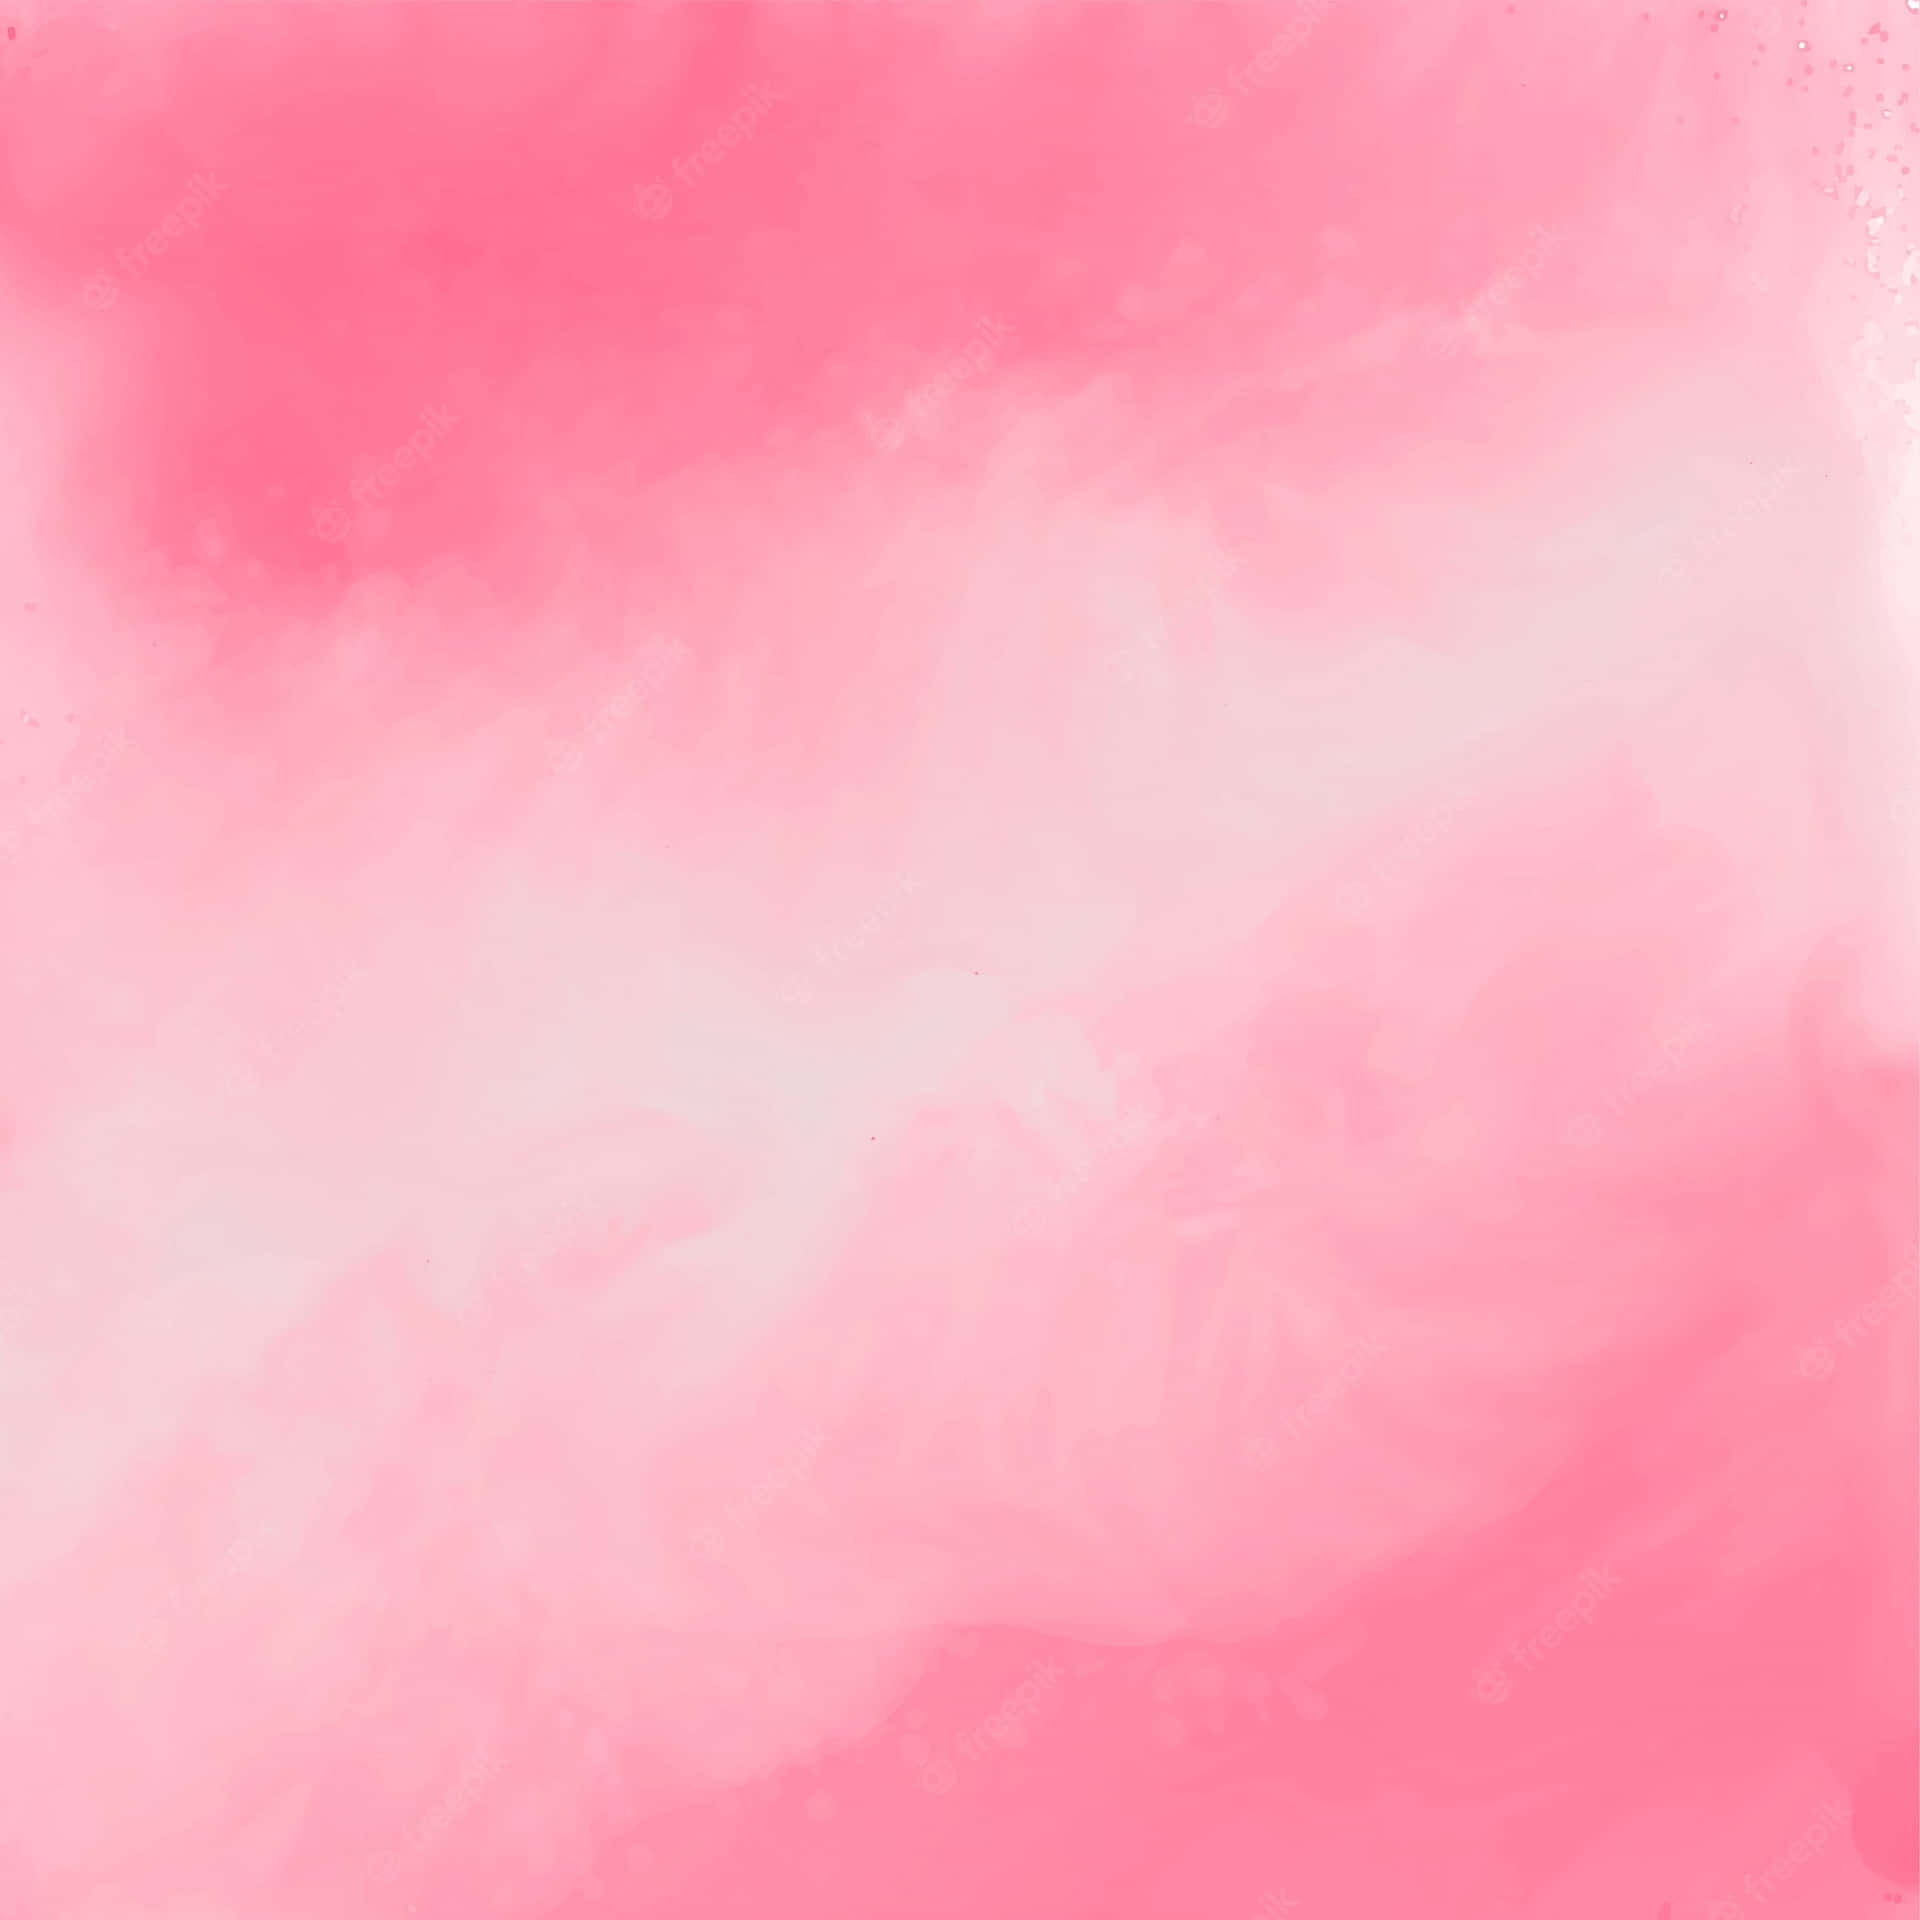 Ettbakgrundsmönster I Pastellrosa Färg.